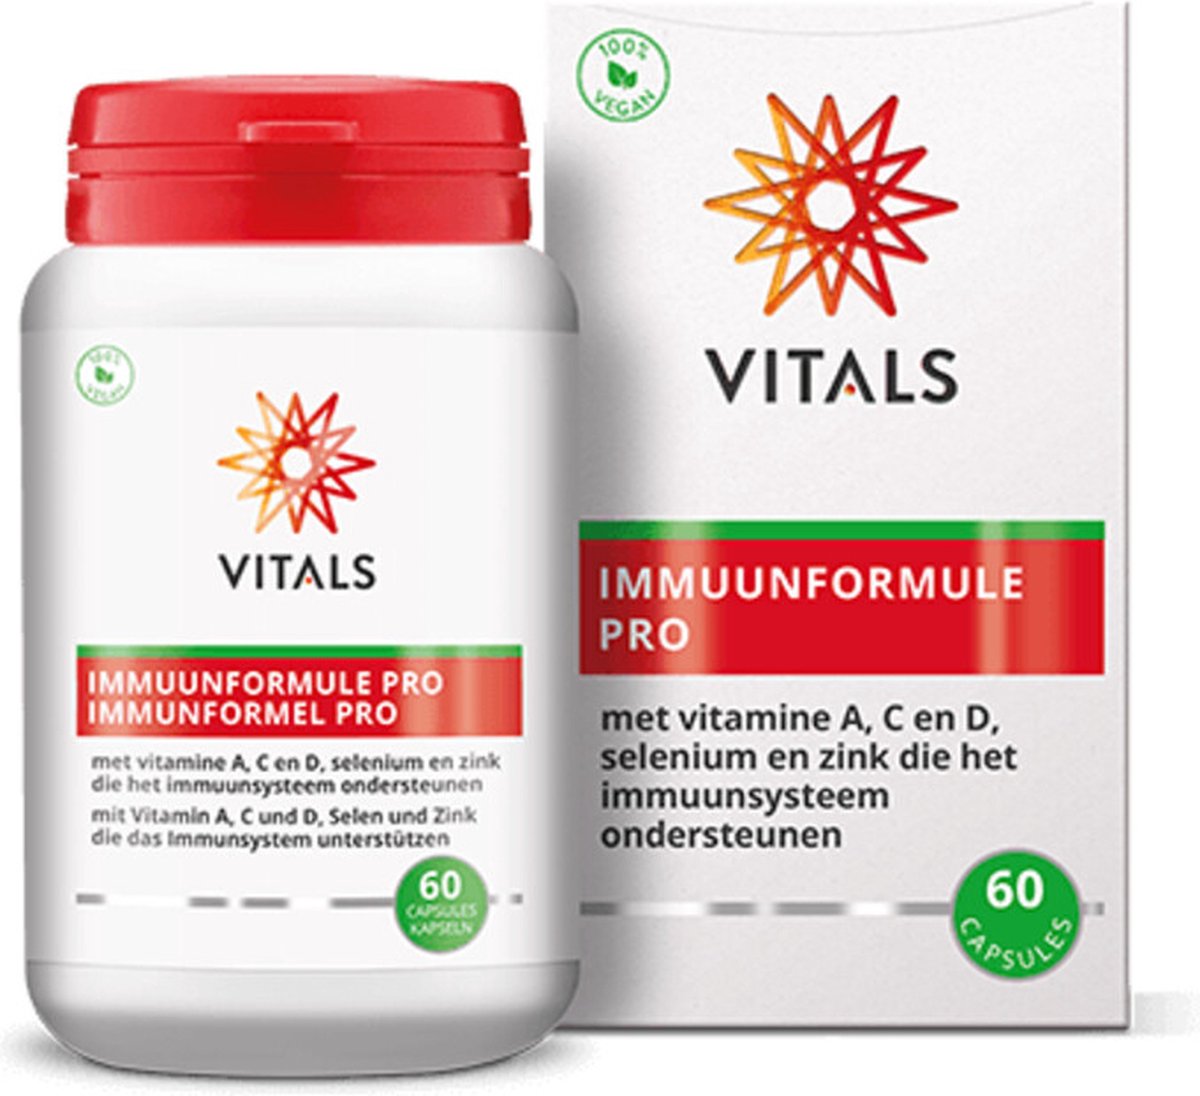 Vitals - Immuunformule Pro - 60 capsules - Met vitamine A, C, D, selenium en zink die het immuunsysteem ondersteunen